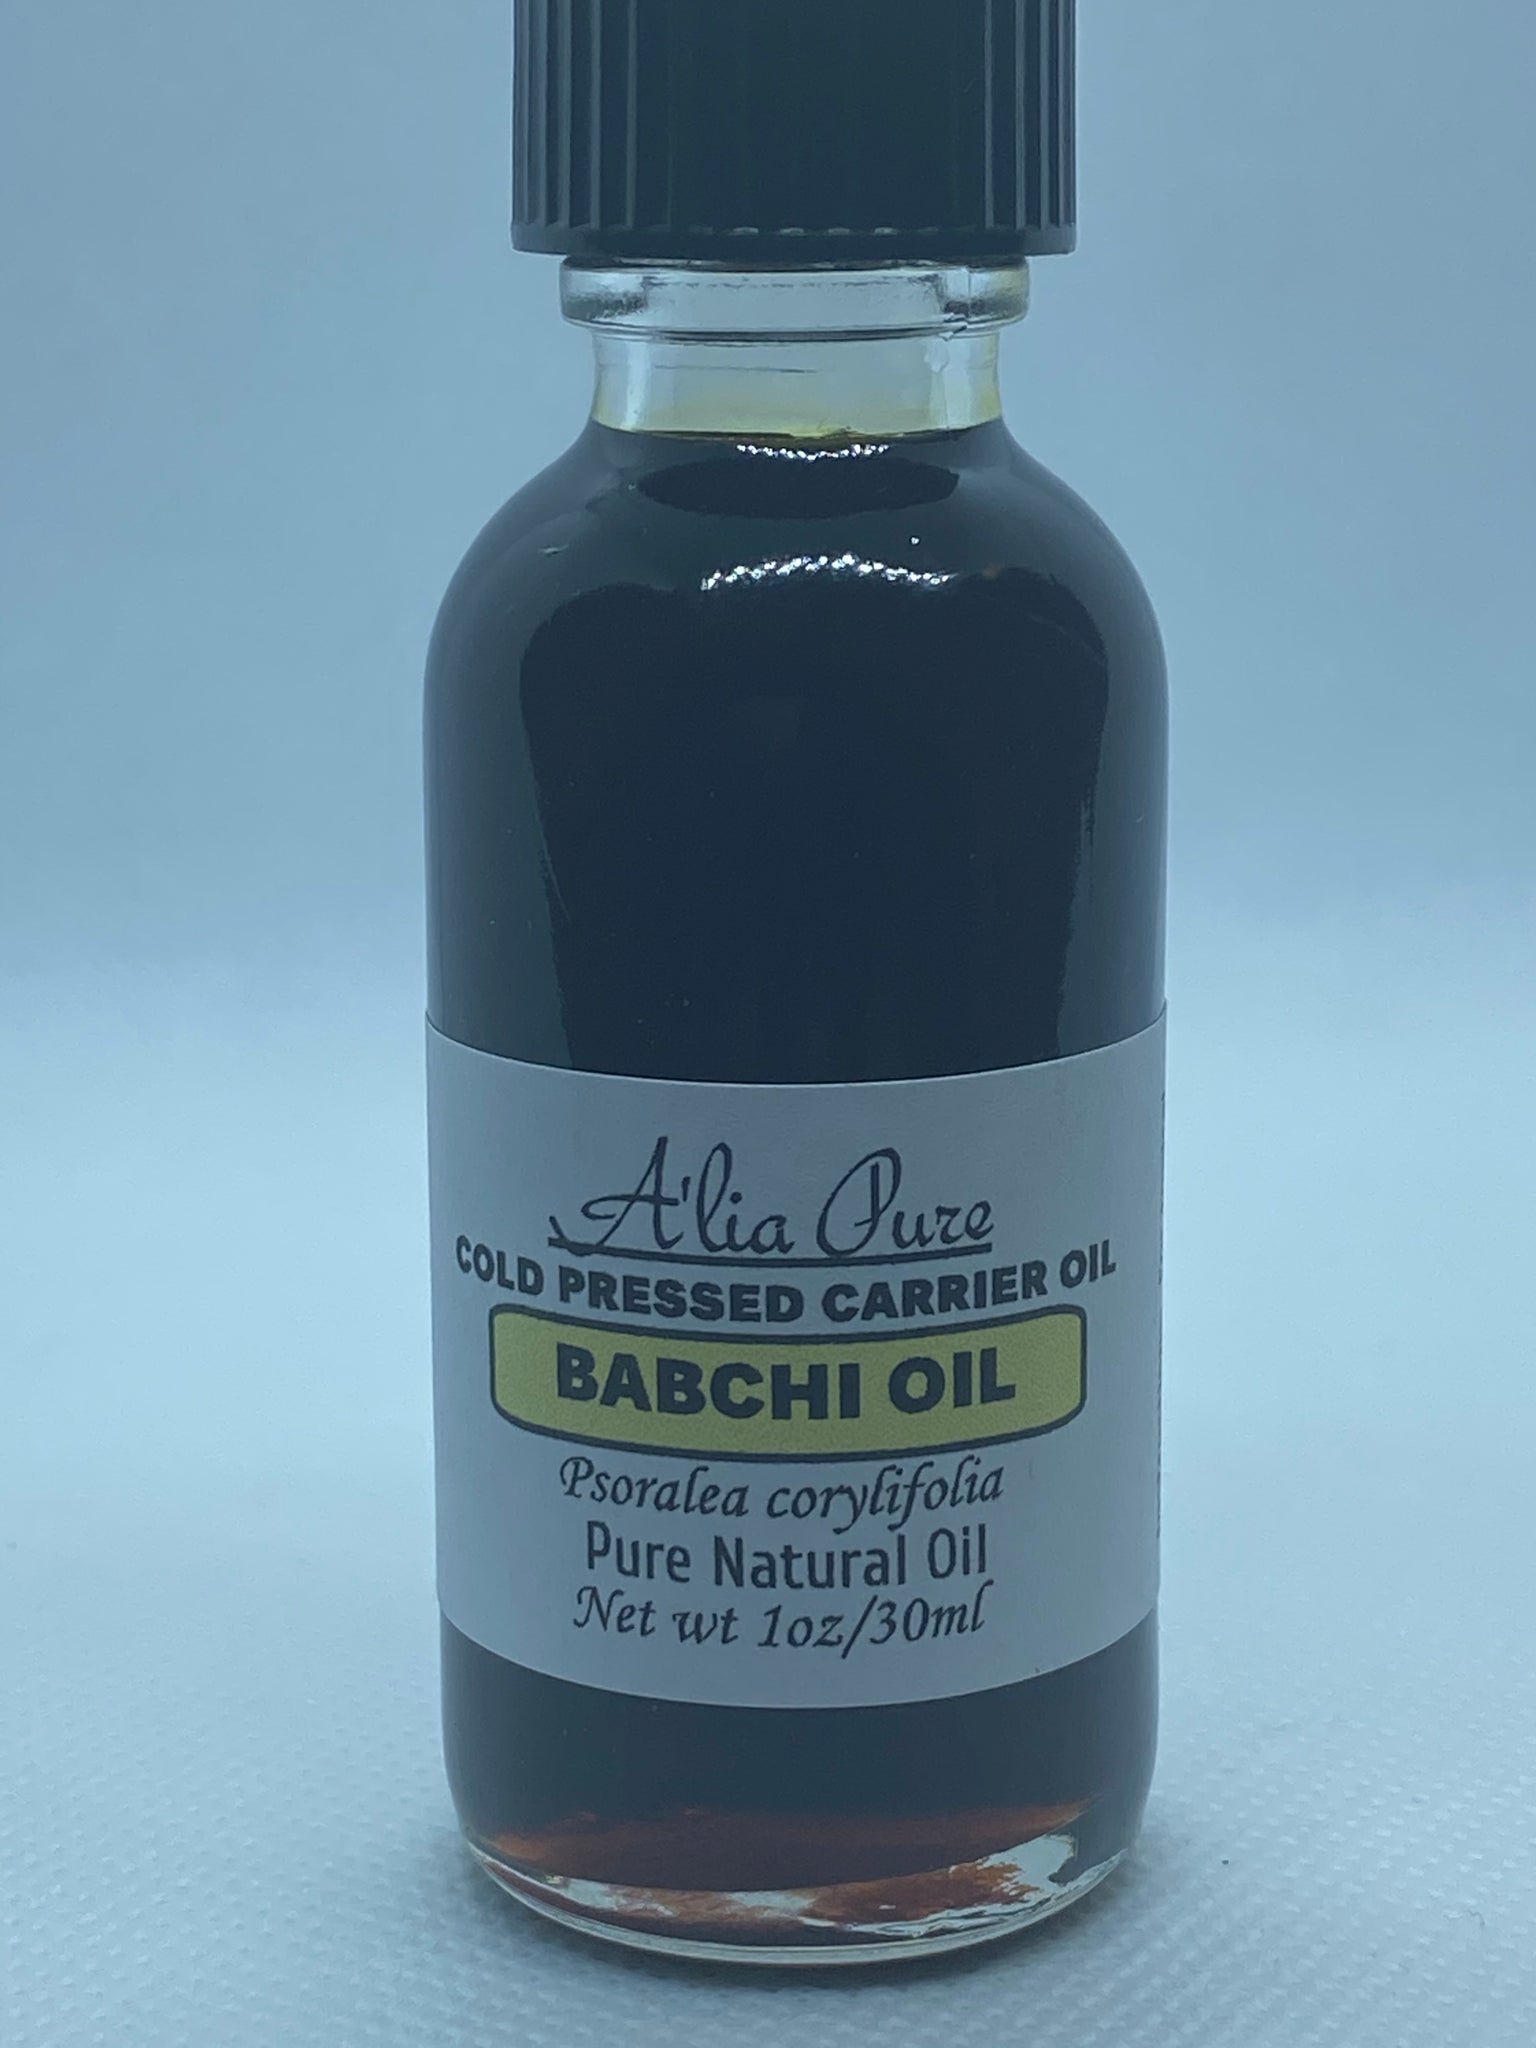 Babchi Oil